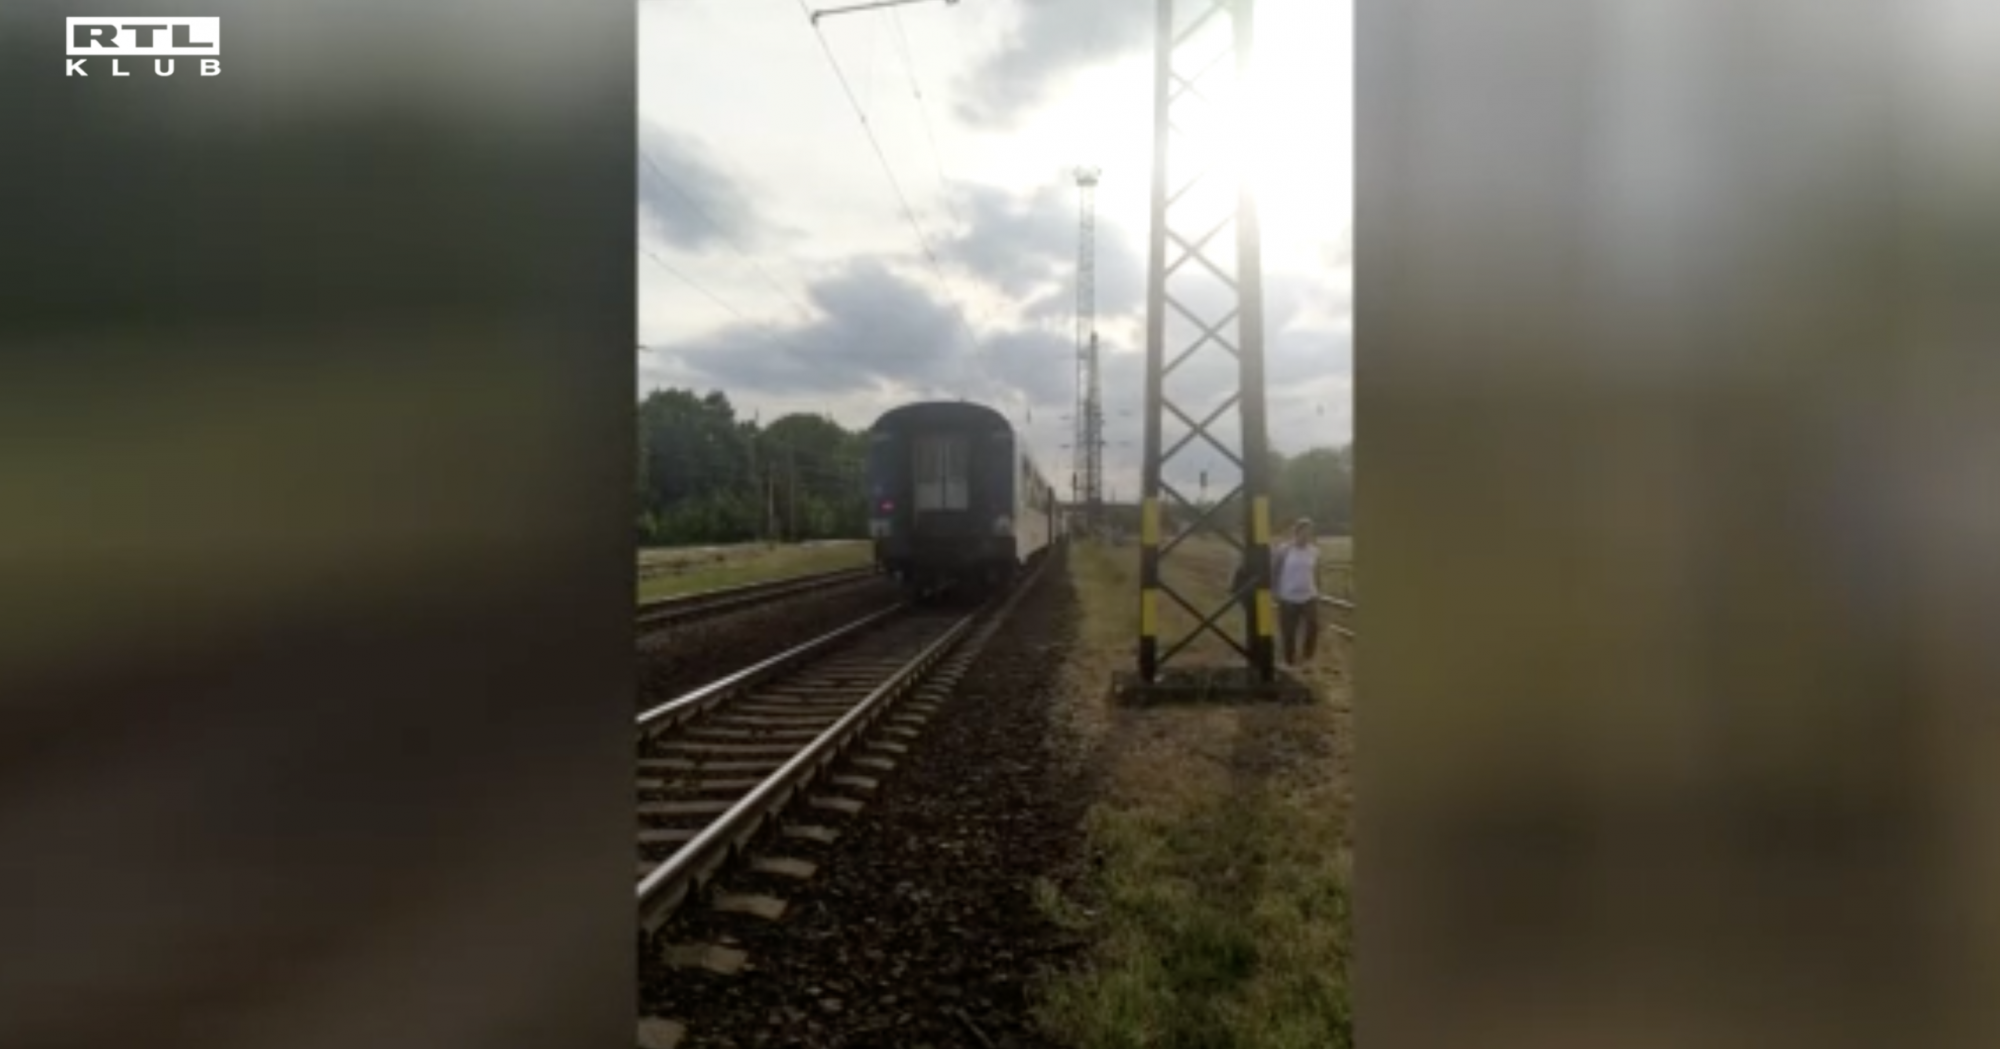 Nem állt meg a vonat a megállóban, a leszálló utasok a sínek mellett gyalogoltak vissza